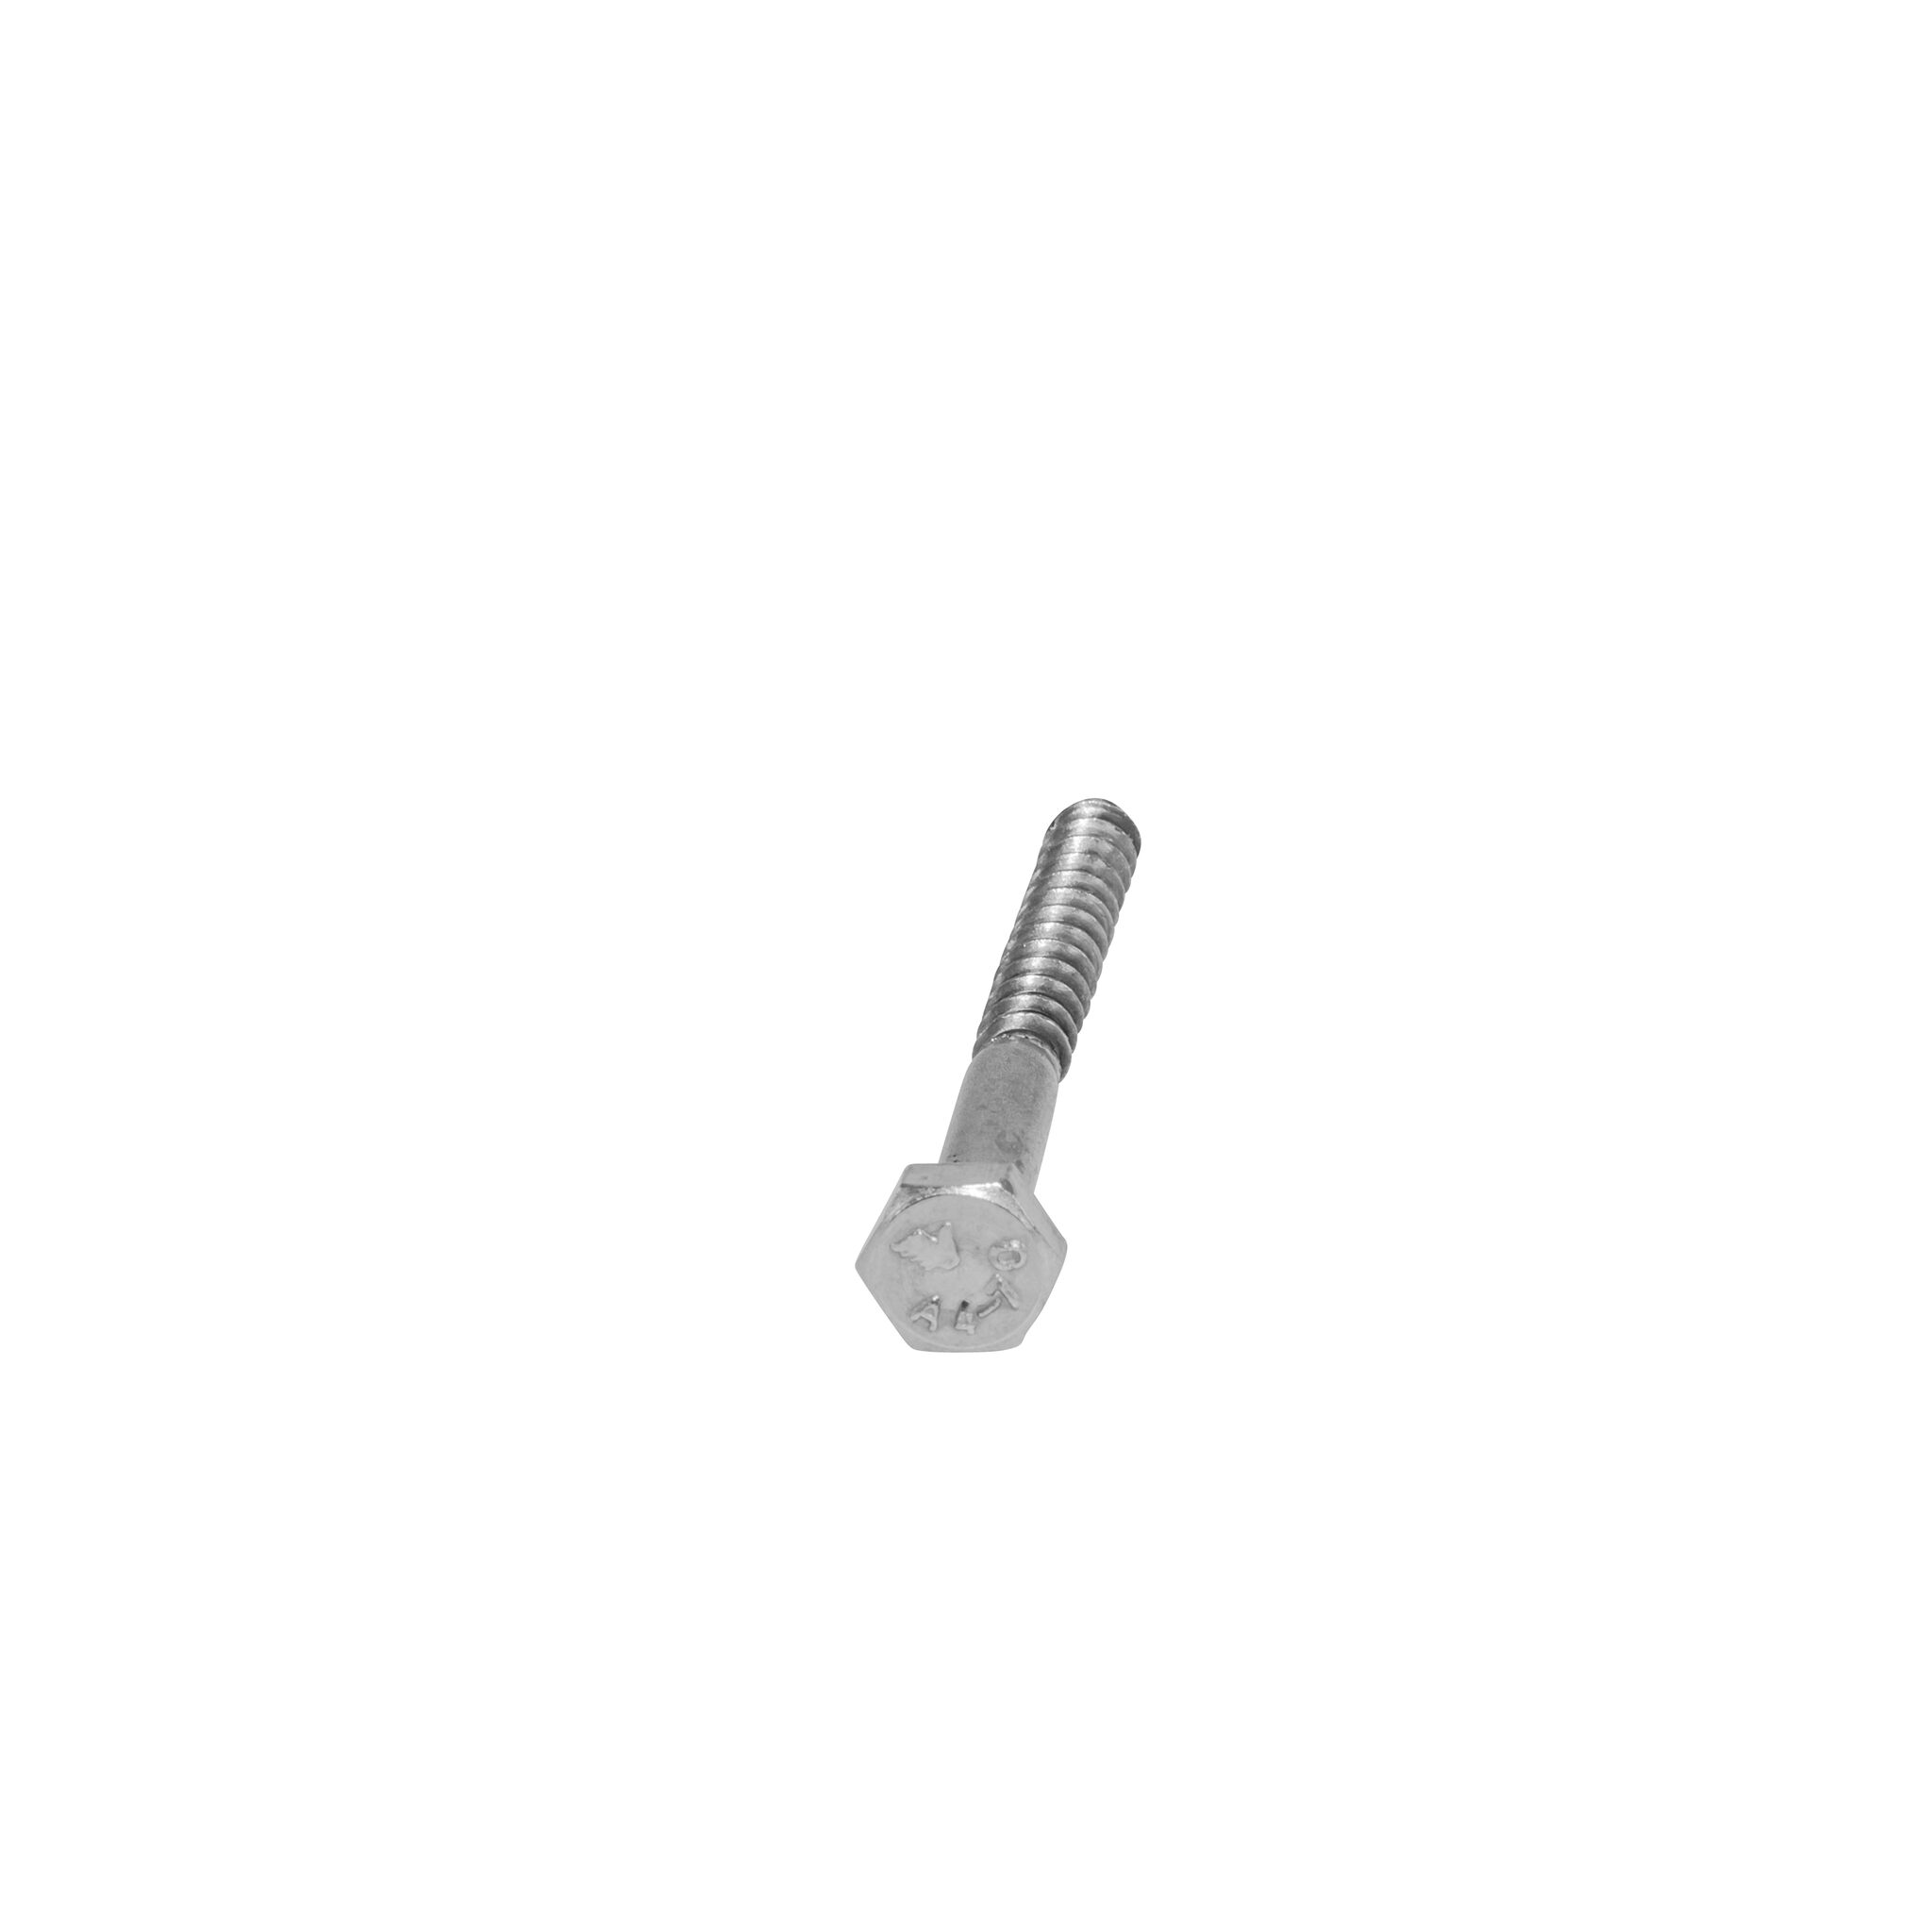 Hexagon wood screw (DIN 571-A4)